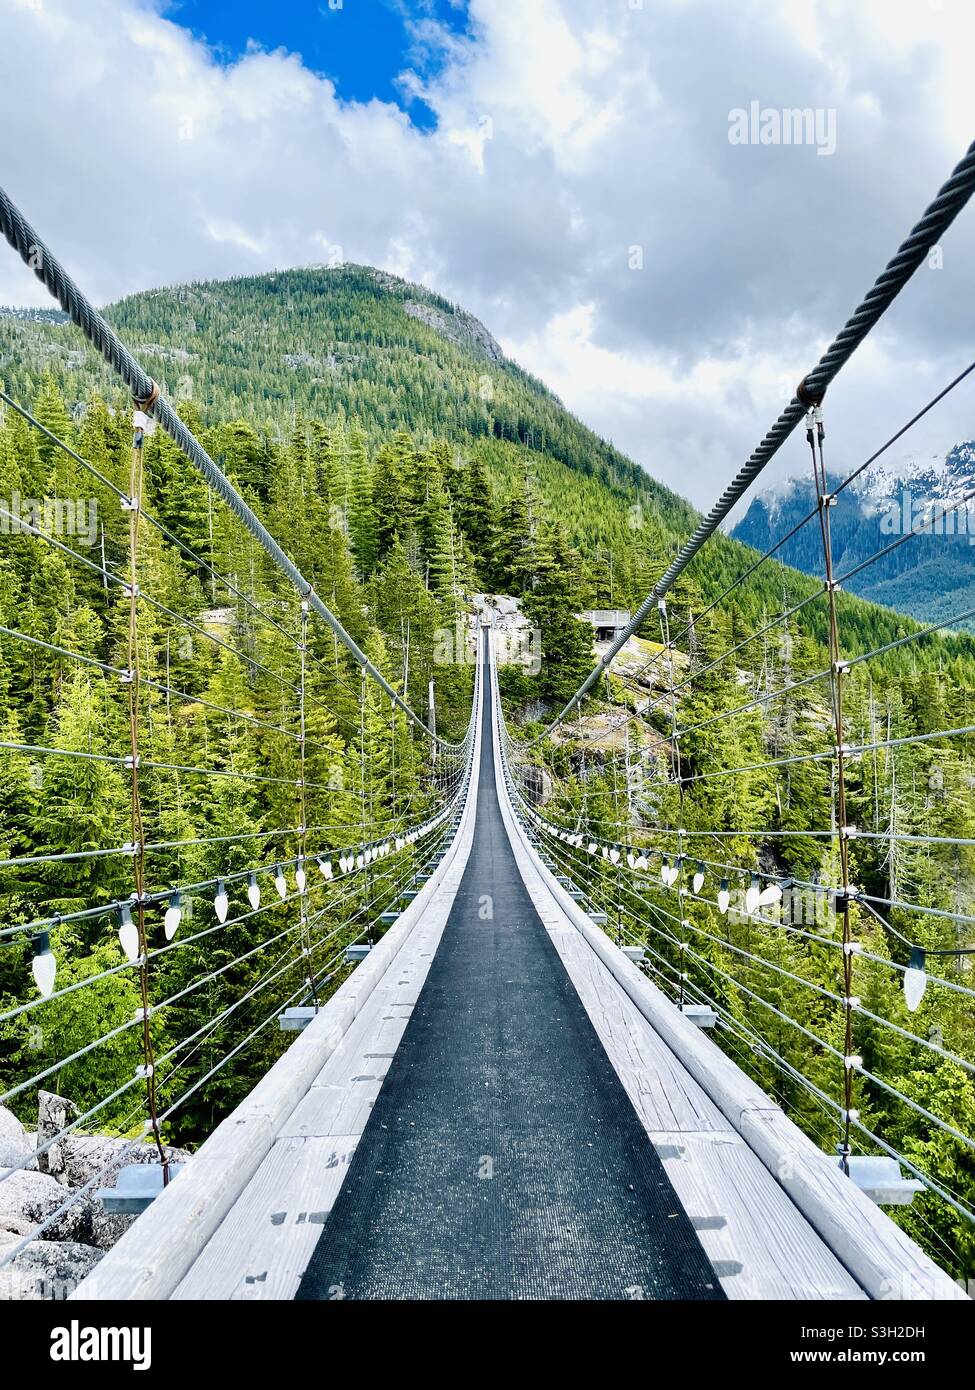 Pont suspendu du pilote du ciel au sommet de la mer au sommet du ciel. Squamish, C.-B. Canada. Banque D'Images